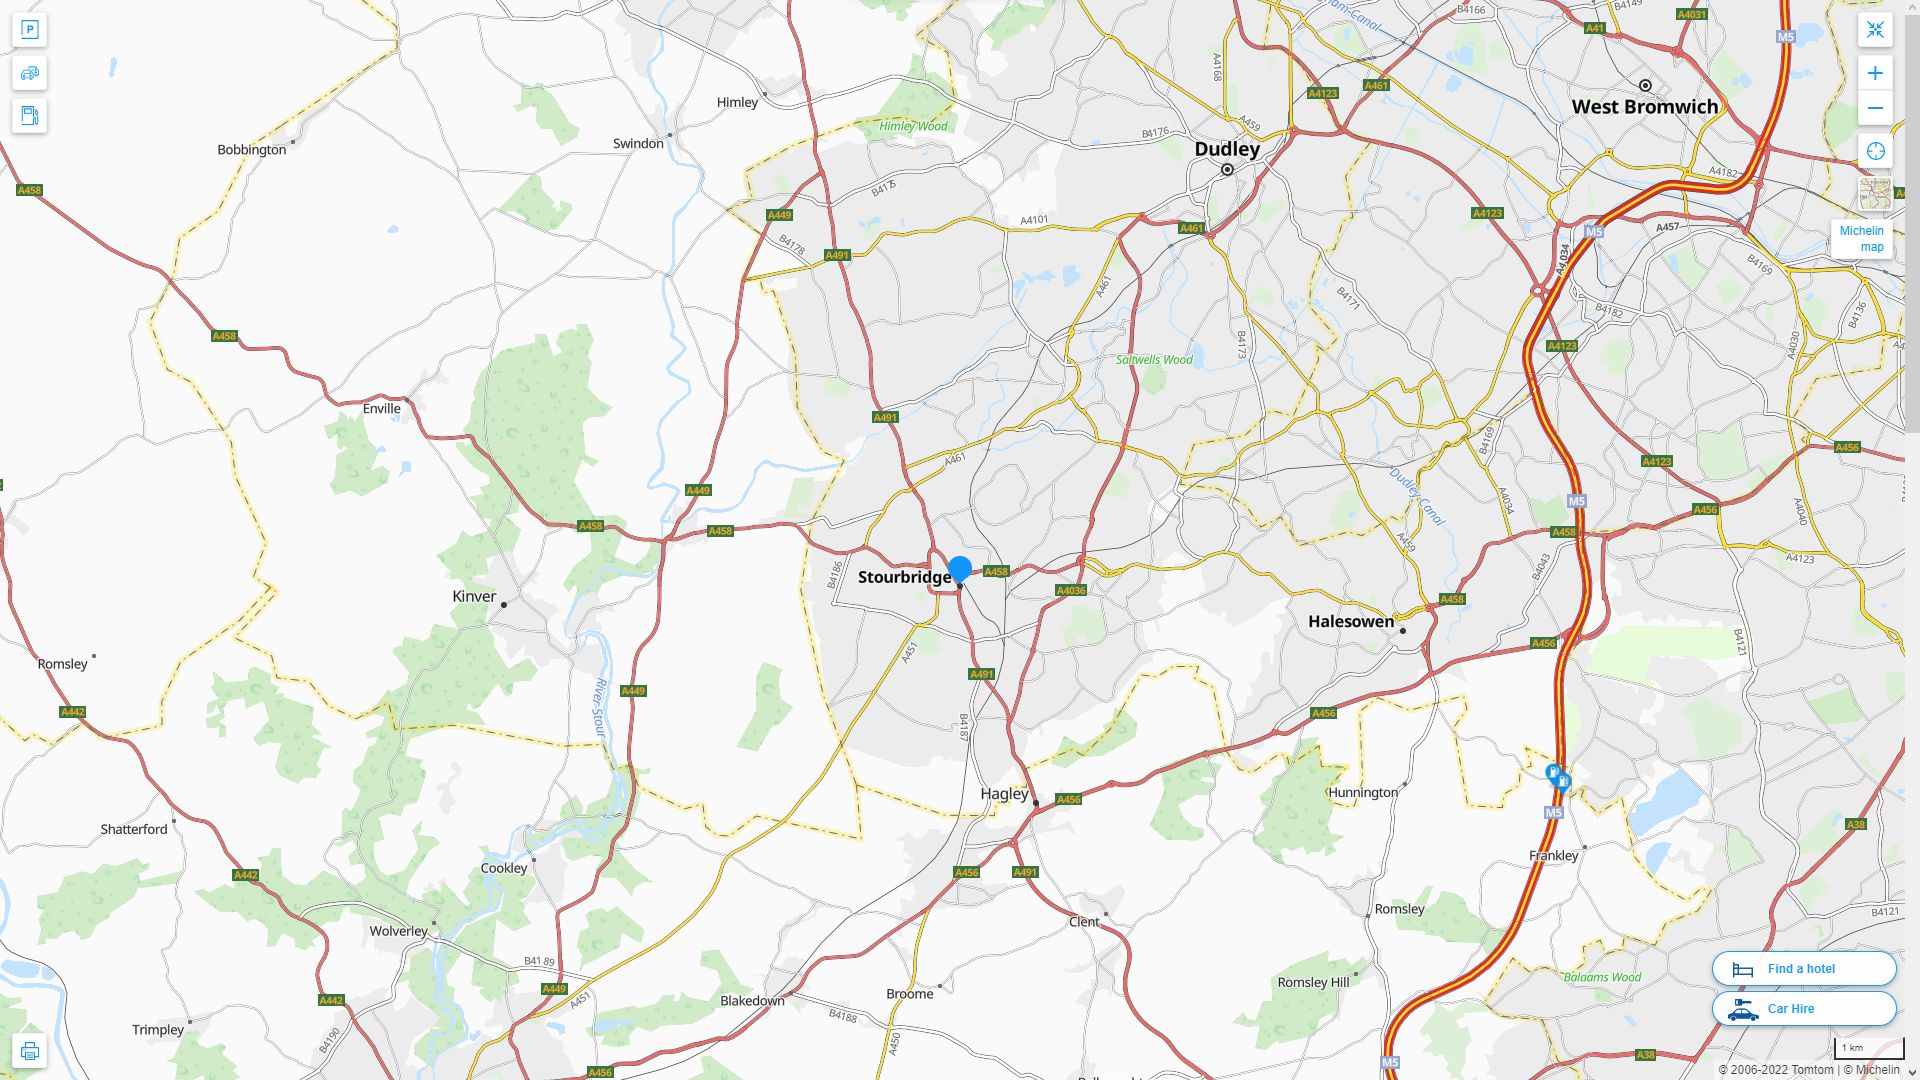 Stourbridge Royaume Uni Autoroute et carte routiere